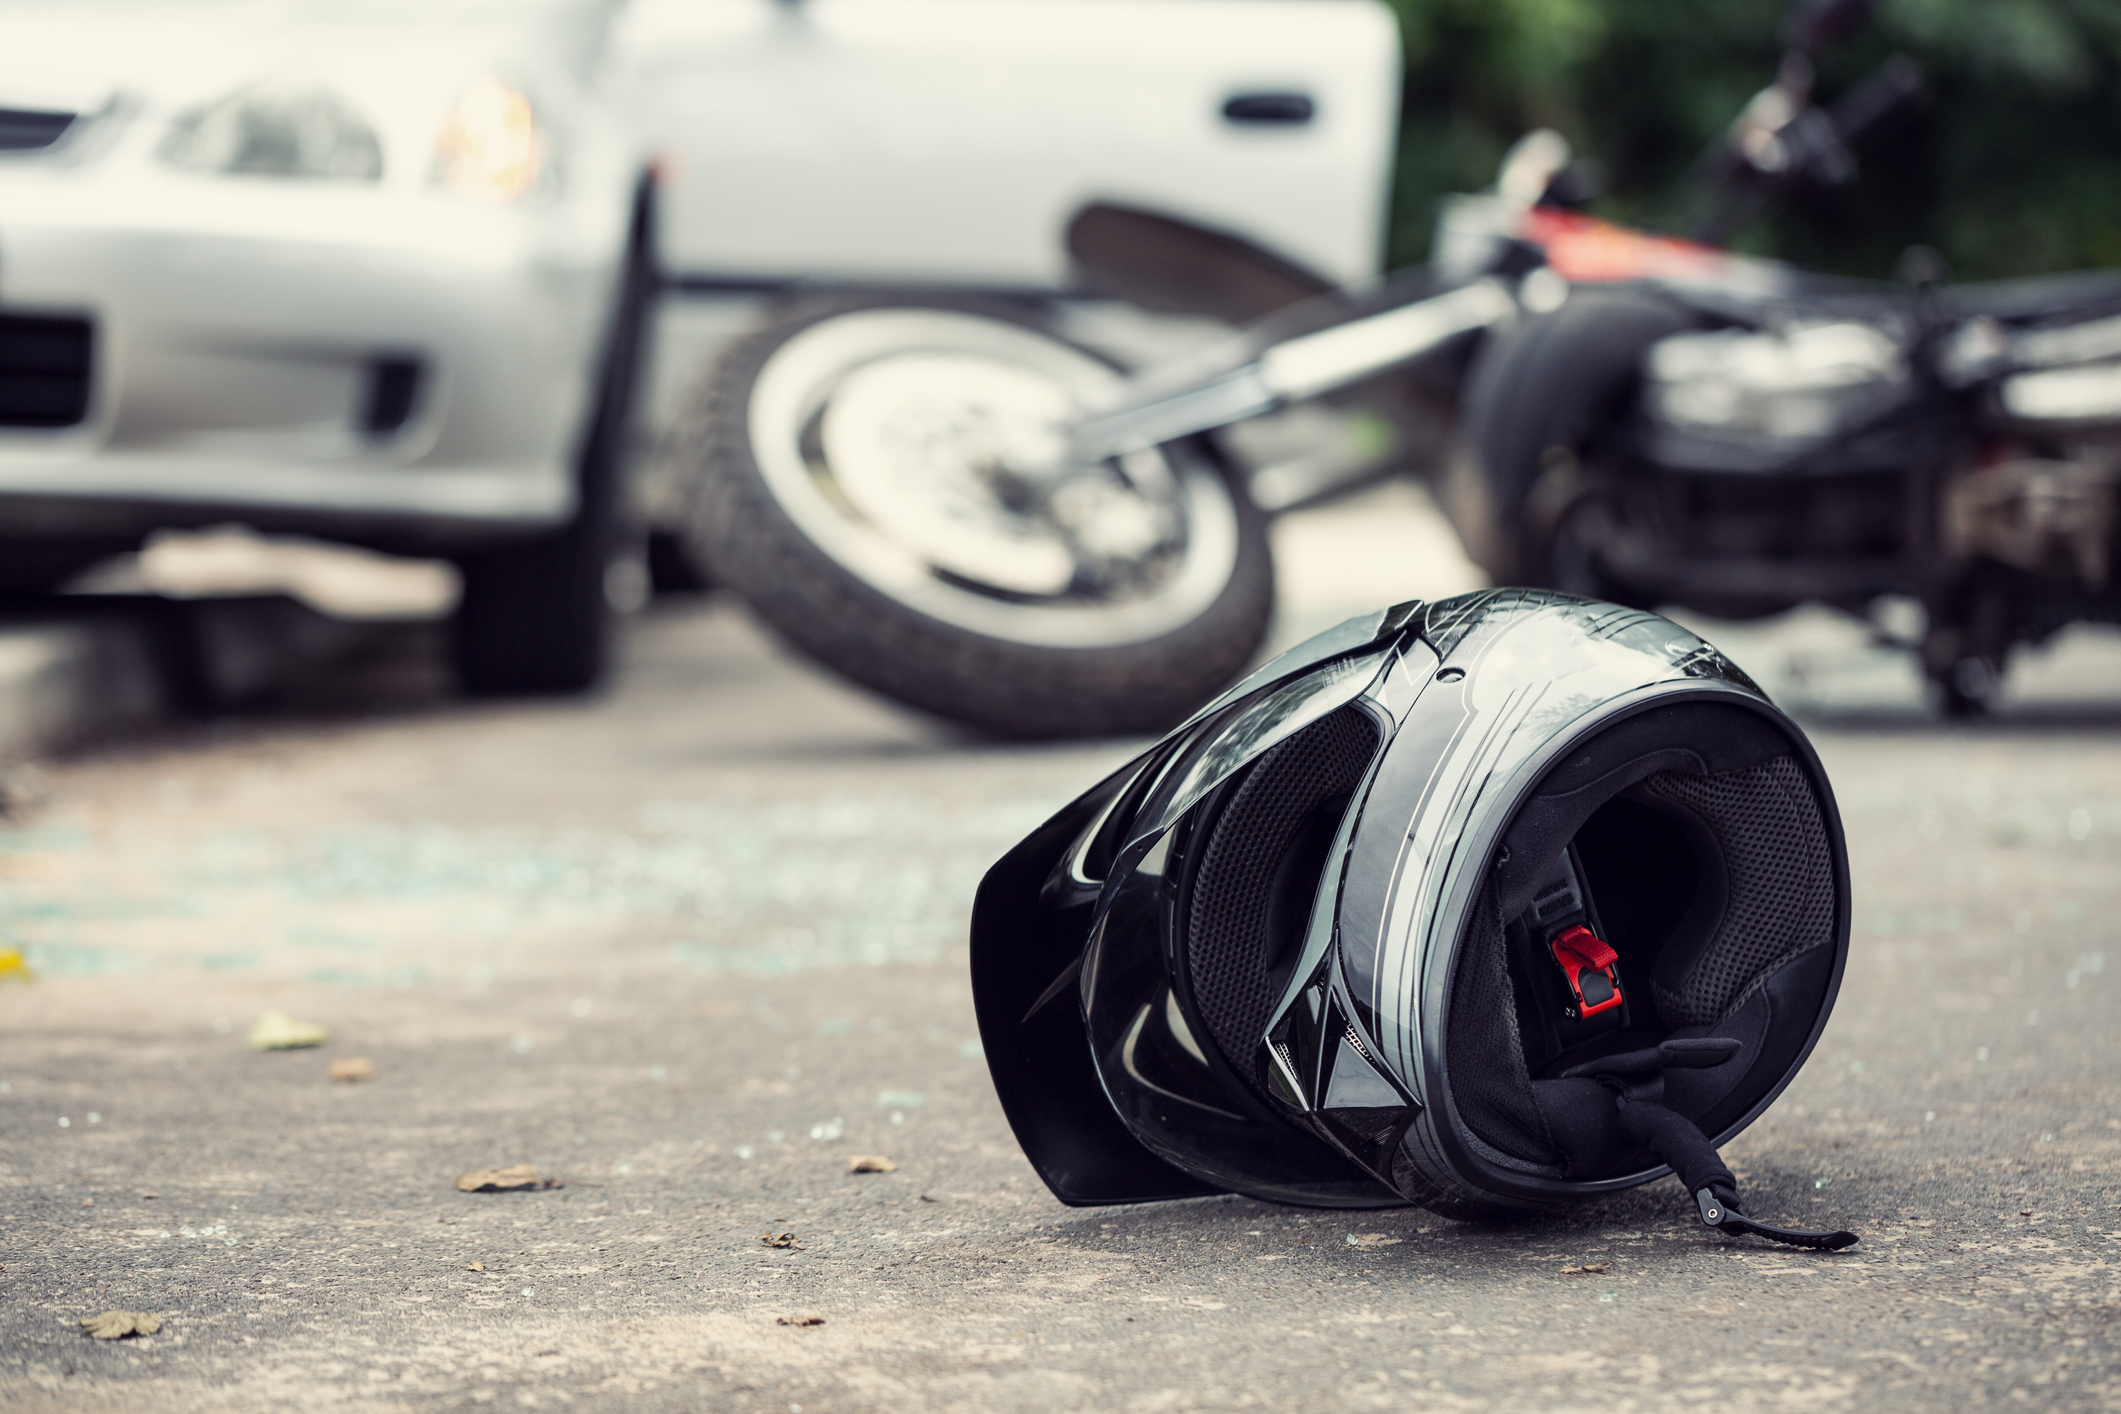 En Valledupar, un venezolano murió en accidente de tránsito al chocar su moto